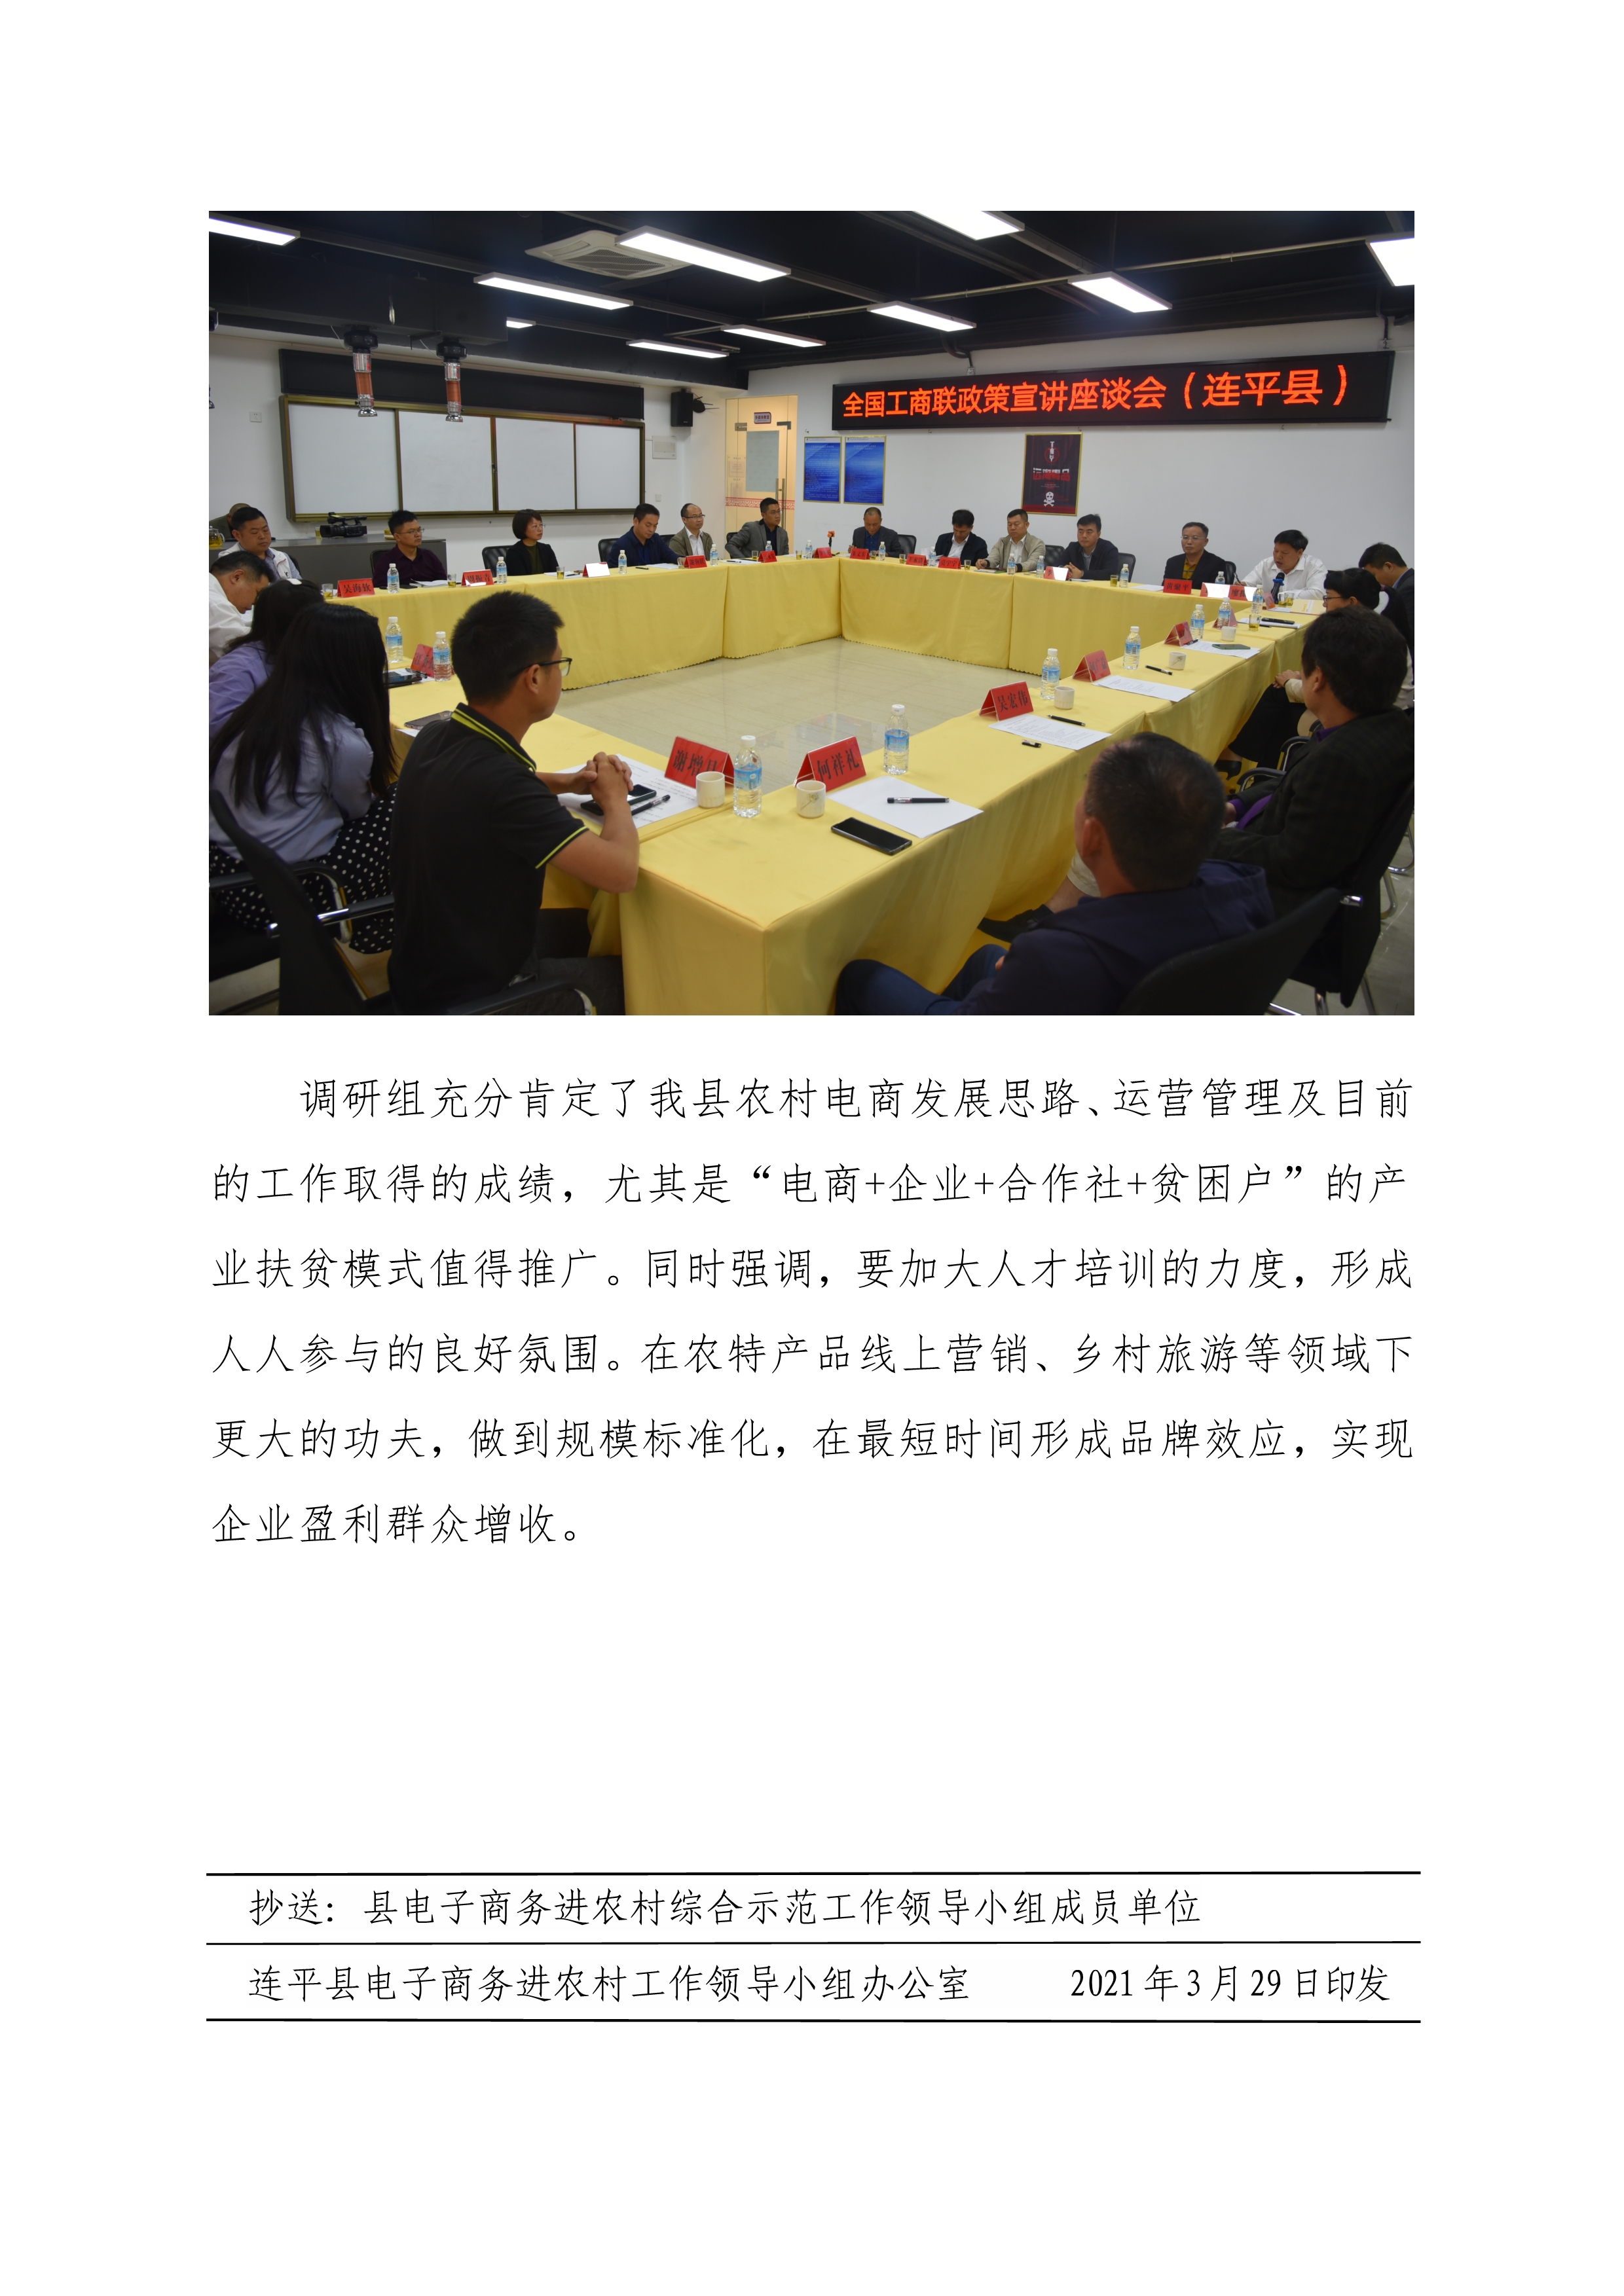 连平县电子商务进农村综合示范县项目工作简报第11期_3.jpg